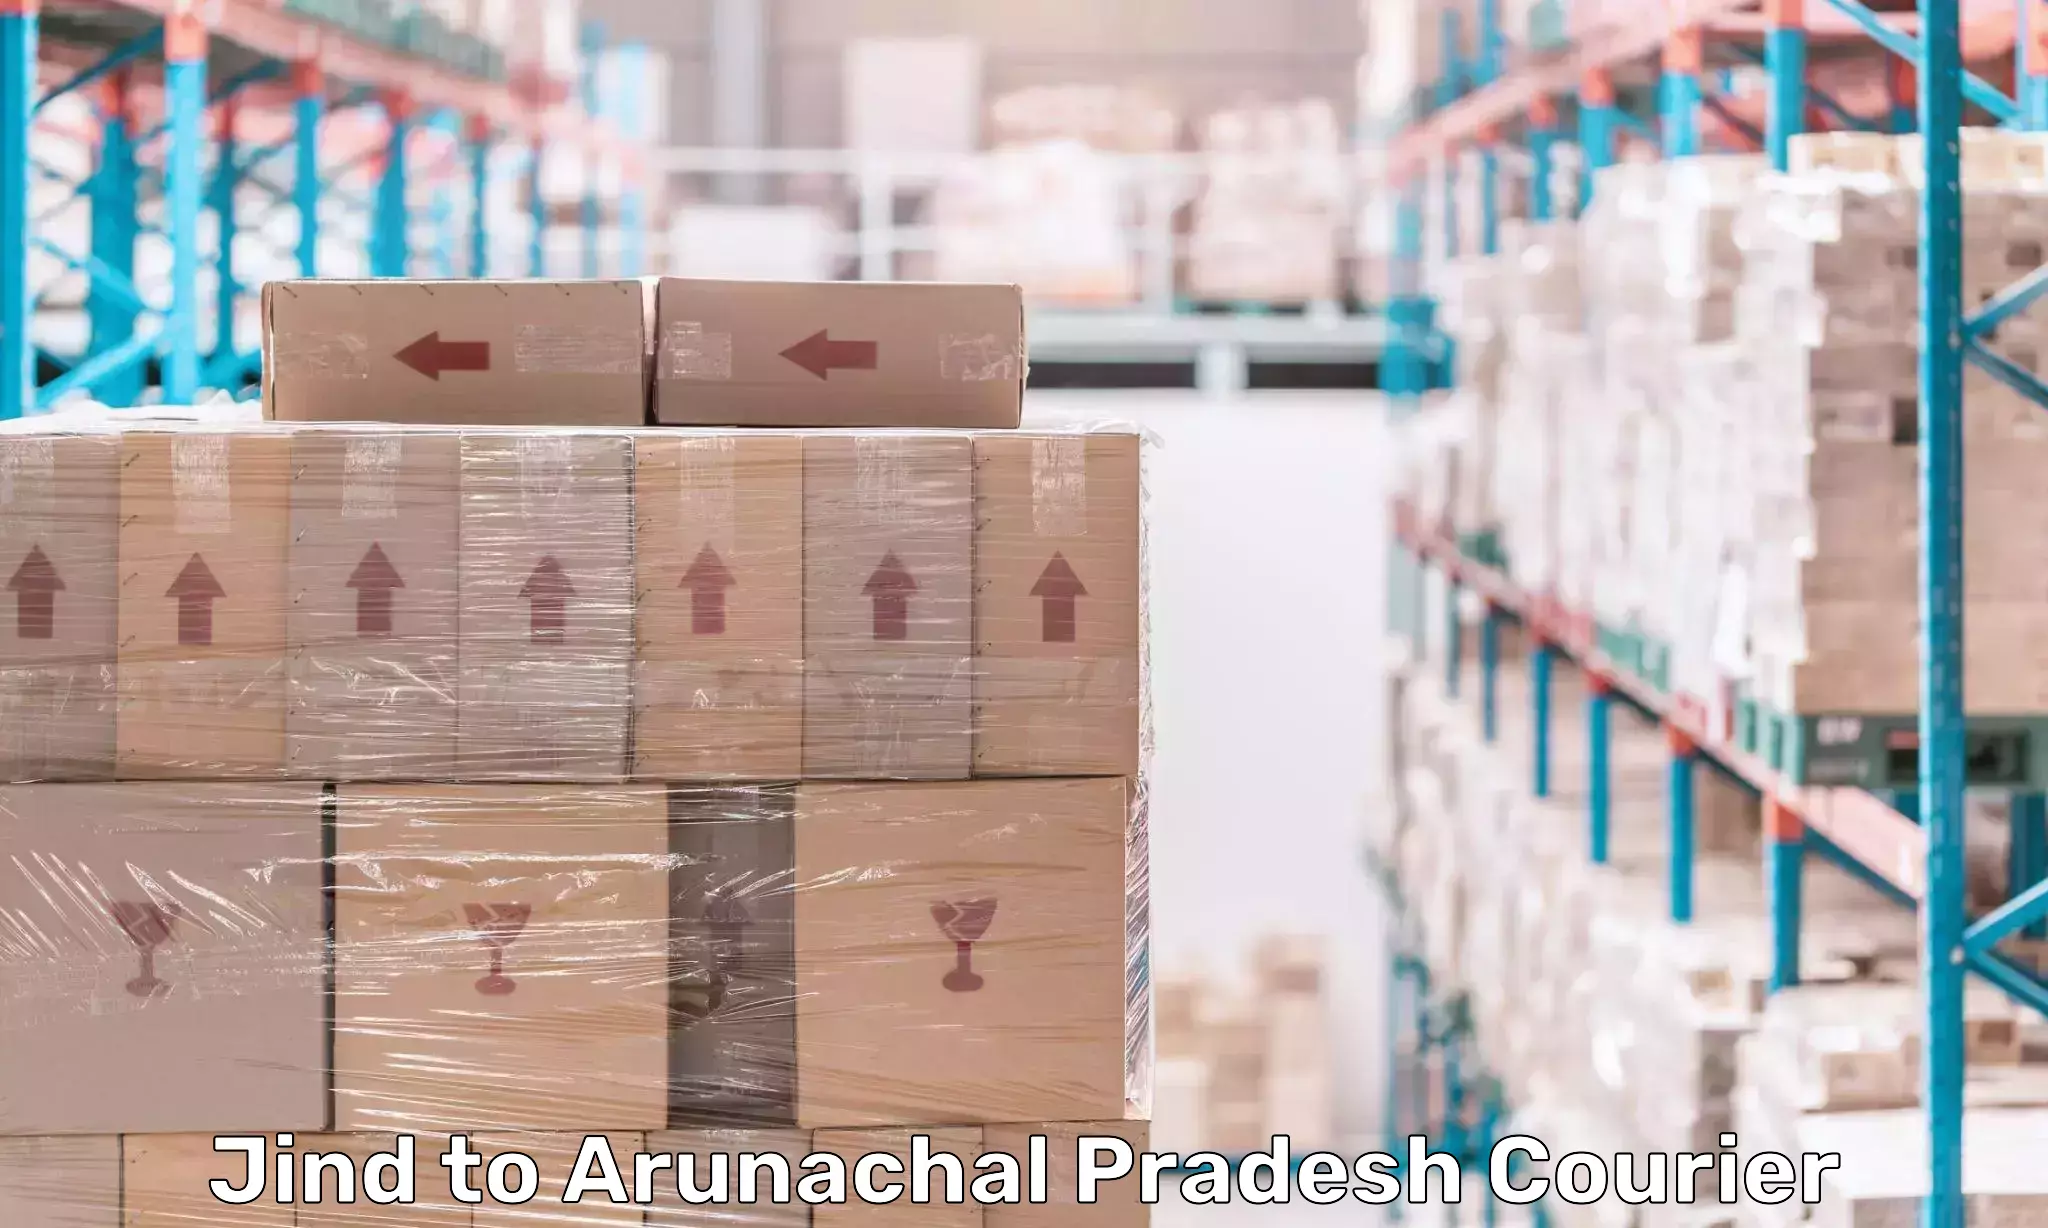 Courier service efficiency Jind to Arunachal Pradesh